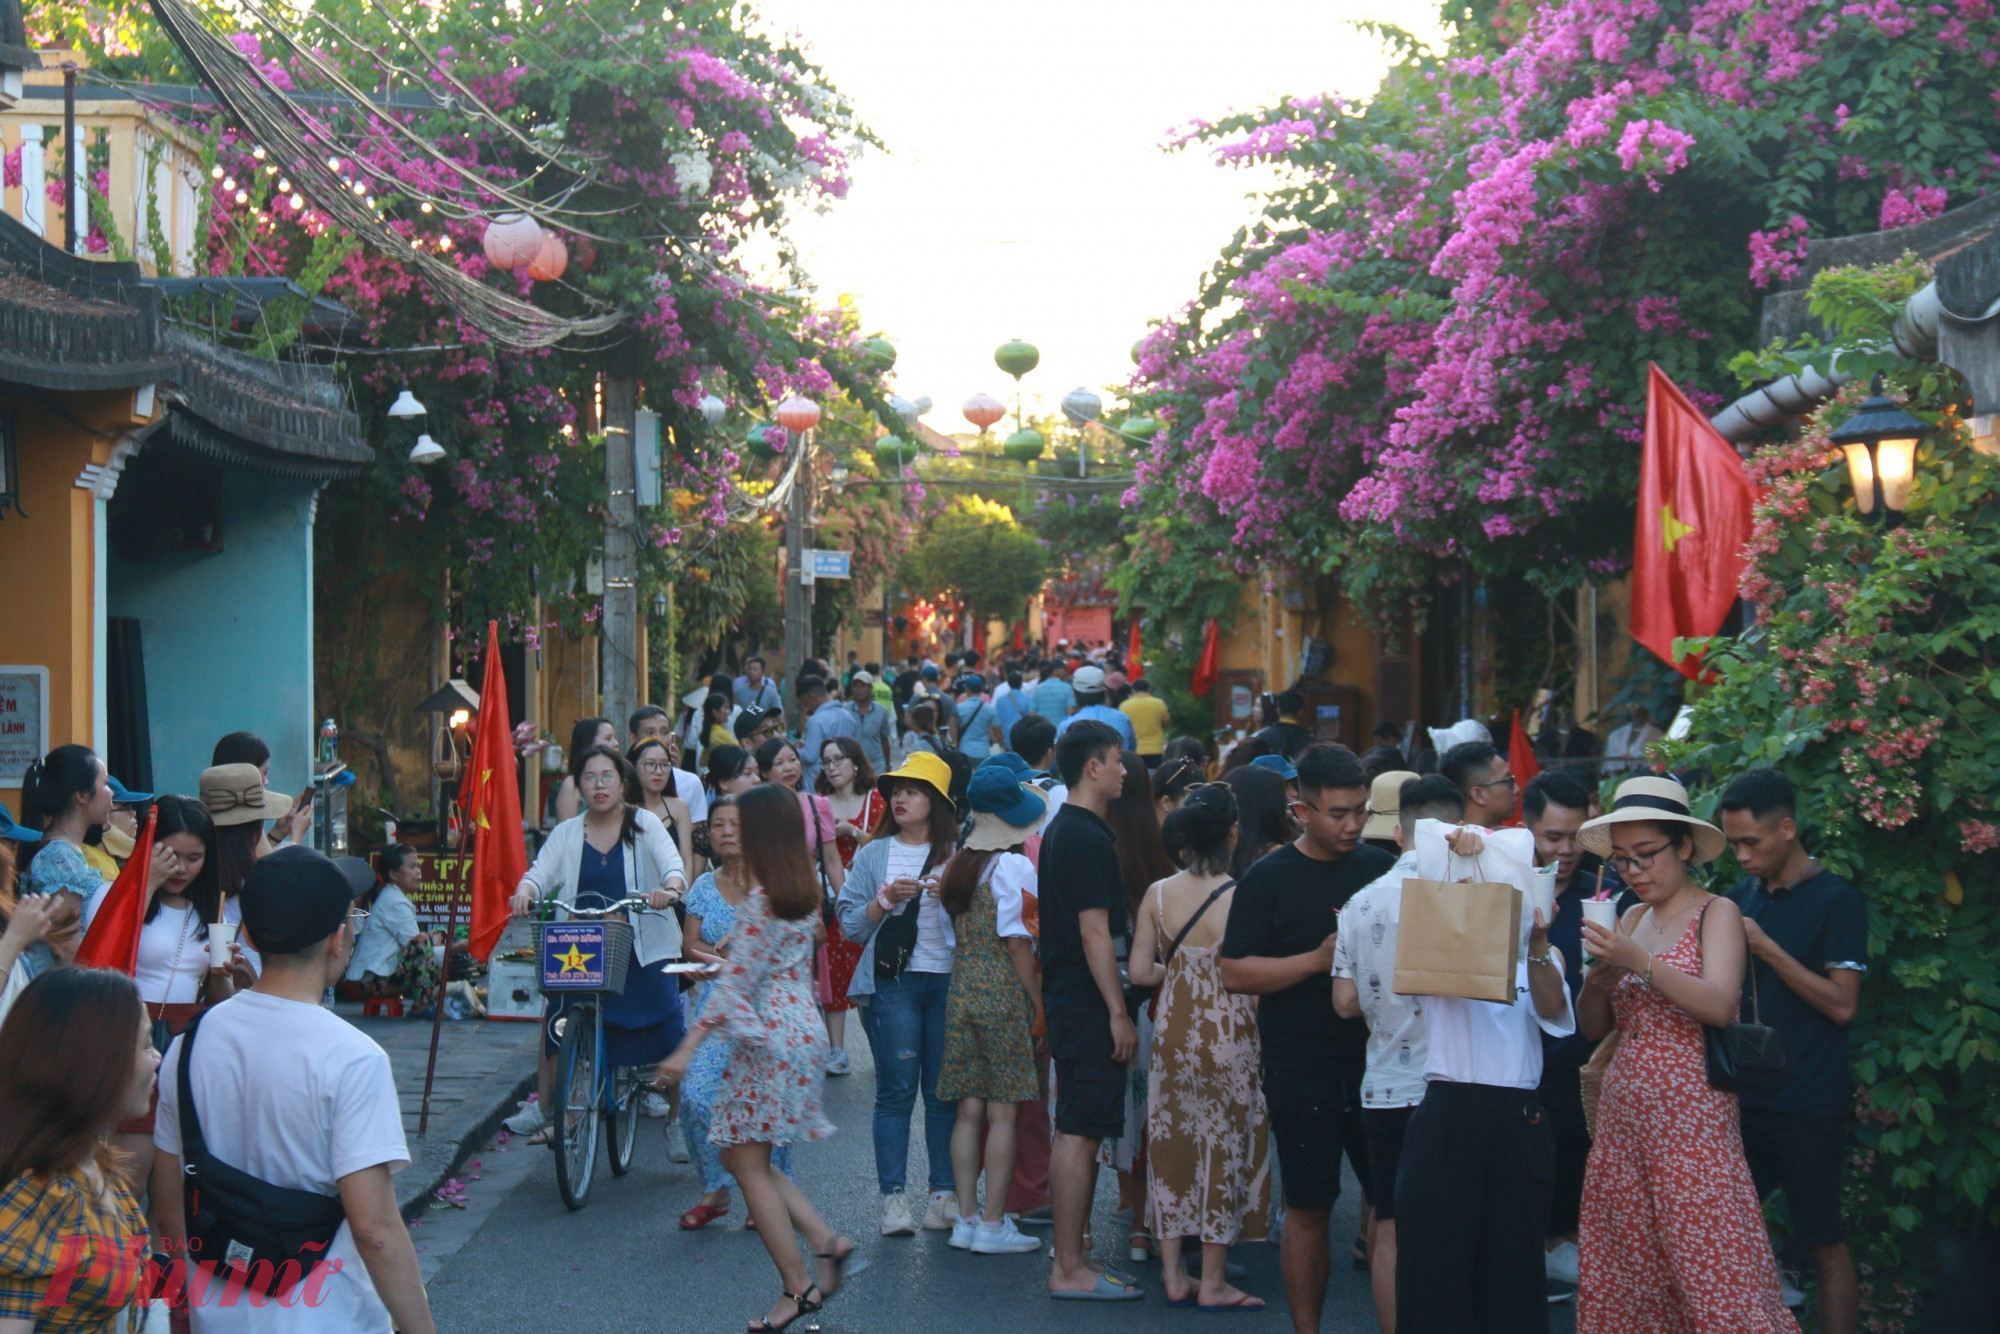 Không chỉ có những kiến trúc cổ mà đường Trần Phú còn có rất nhiều góc chụp hình đẹp với hàng hoa giấy, trong đó có 2 địa điểm rất được ưa thích là ngã tư Trần Phú-Trần Quý Cáp và ngã tư Trần Phú-Lê Lợi.